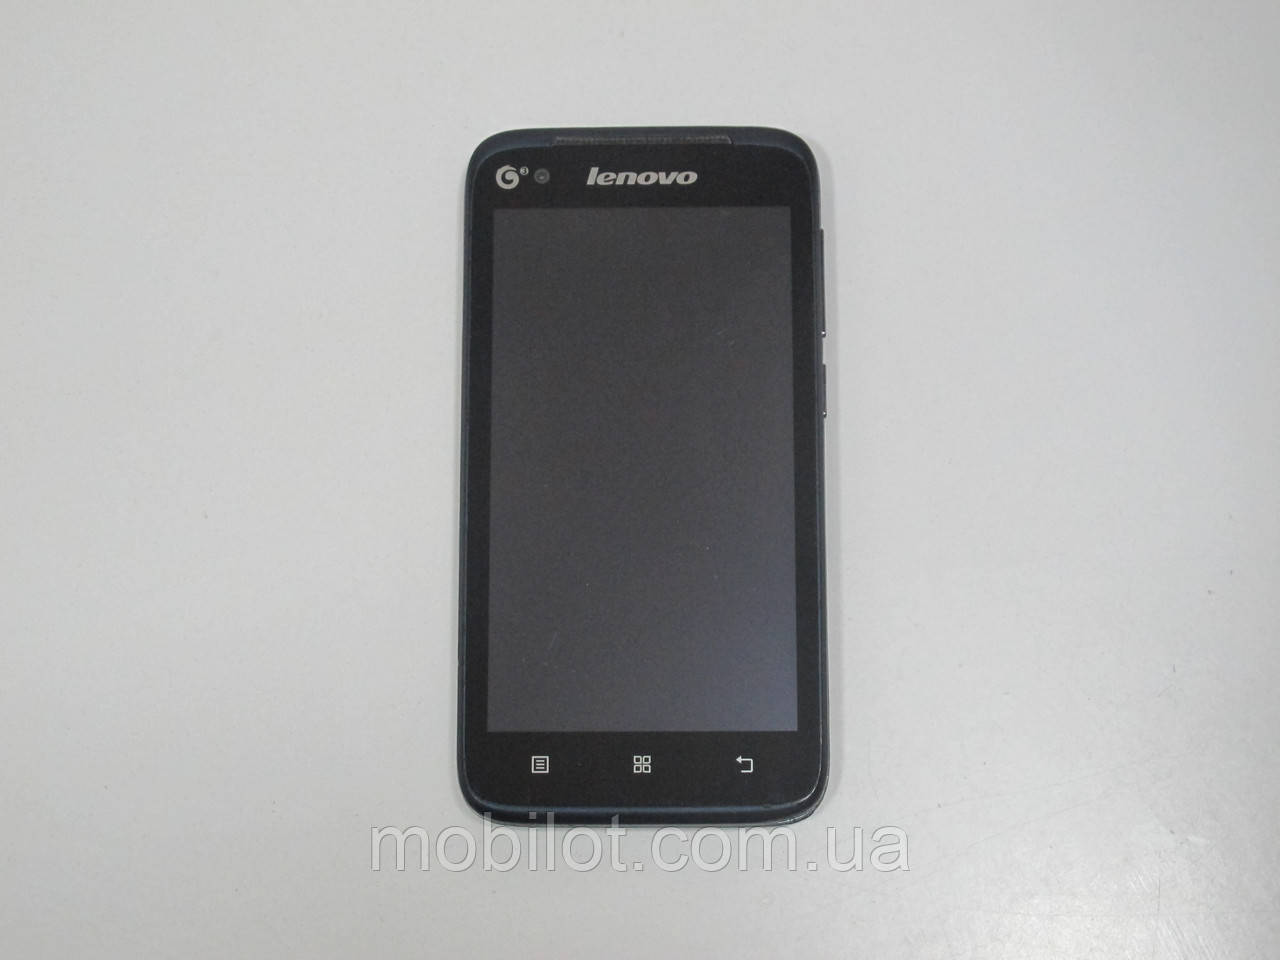 Мобильный телефон Lenovo A398t (TZ-5142) На запчасти